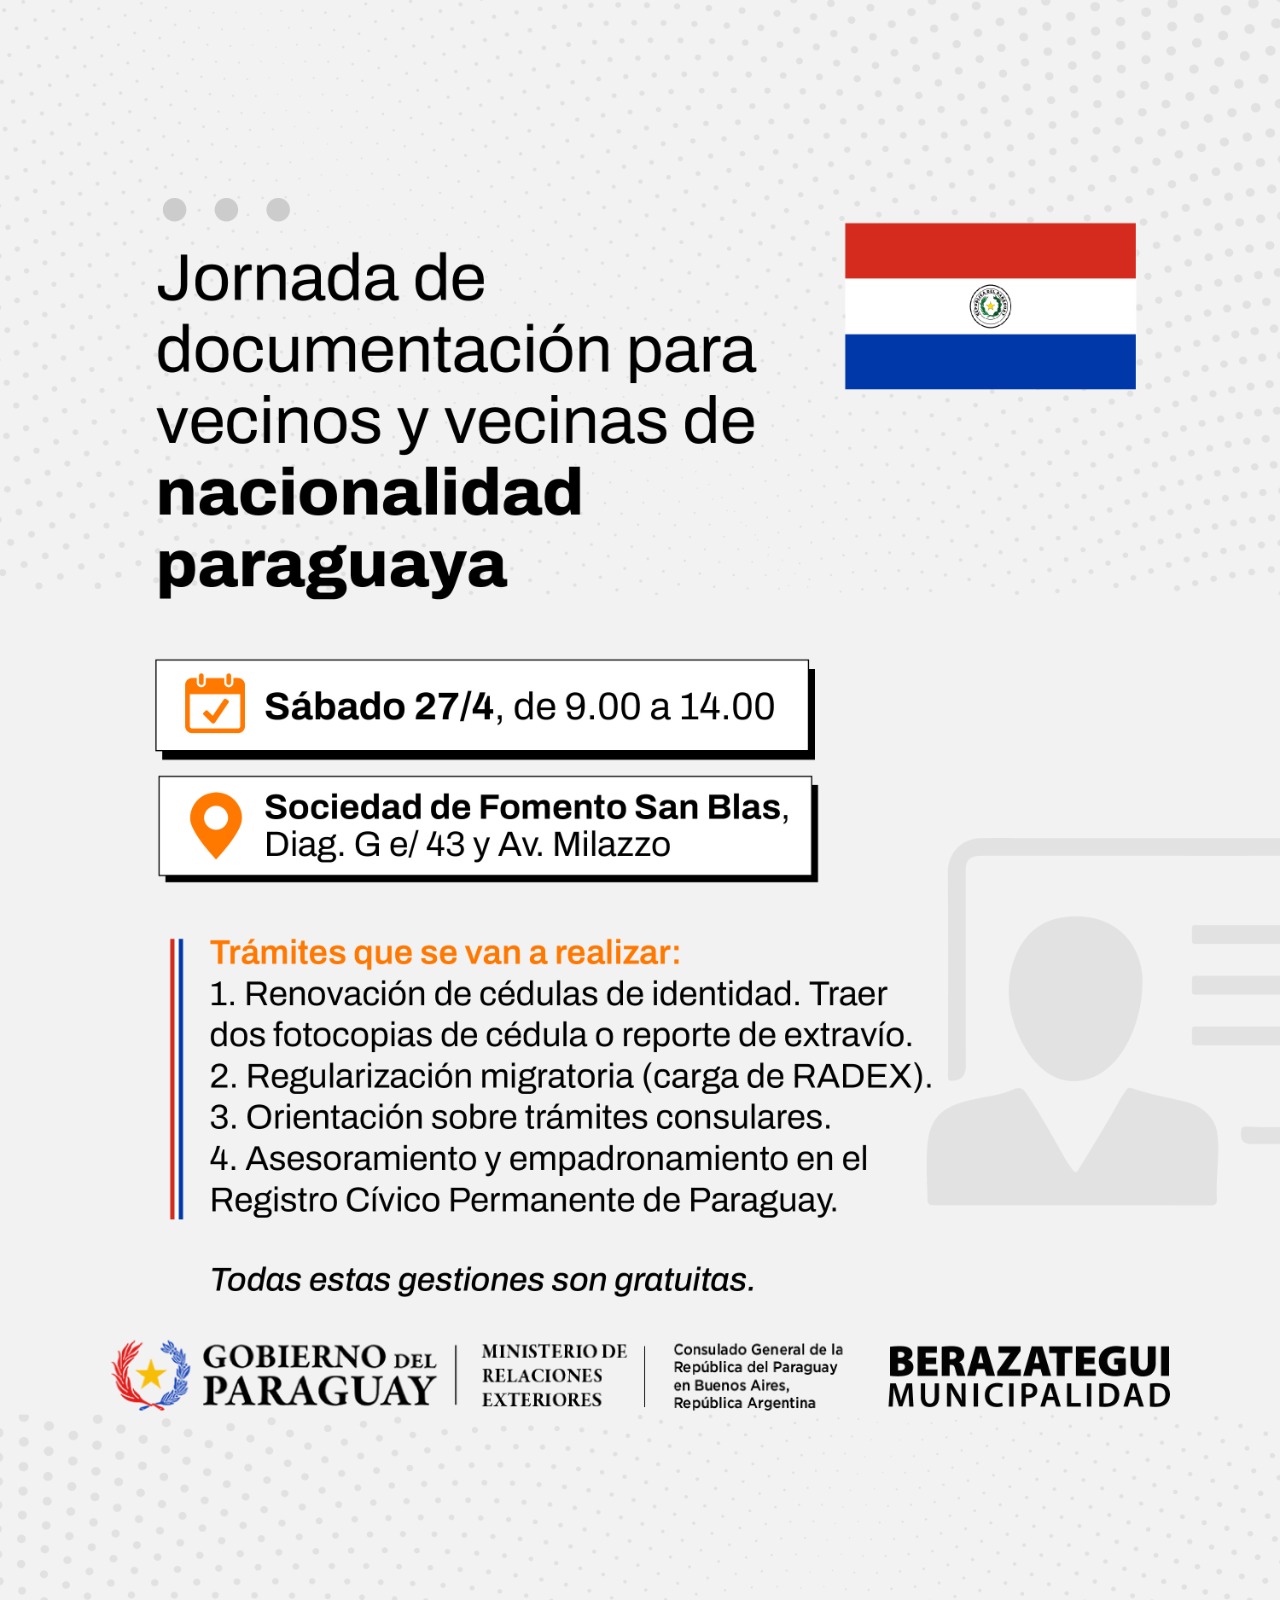 Jornada de documentación para vecinos de nacionalidad paraguaya